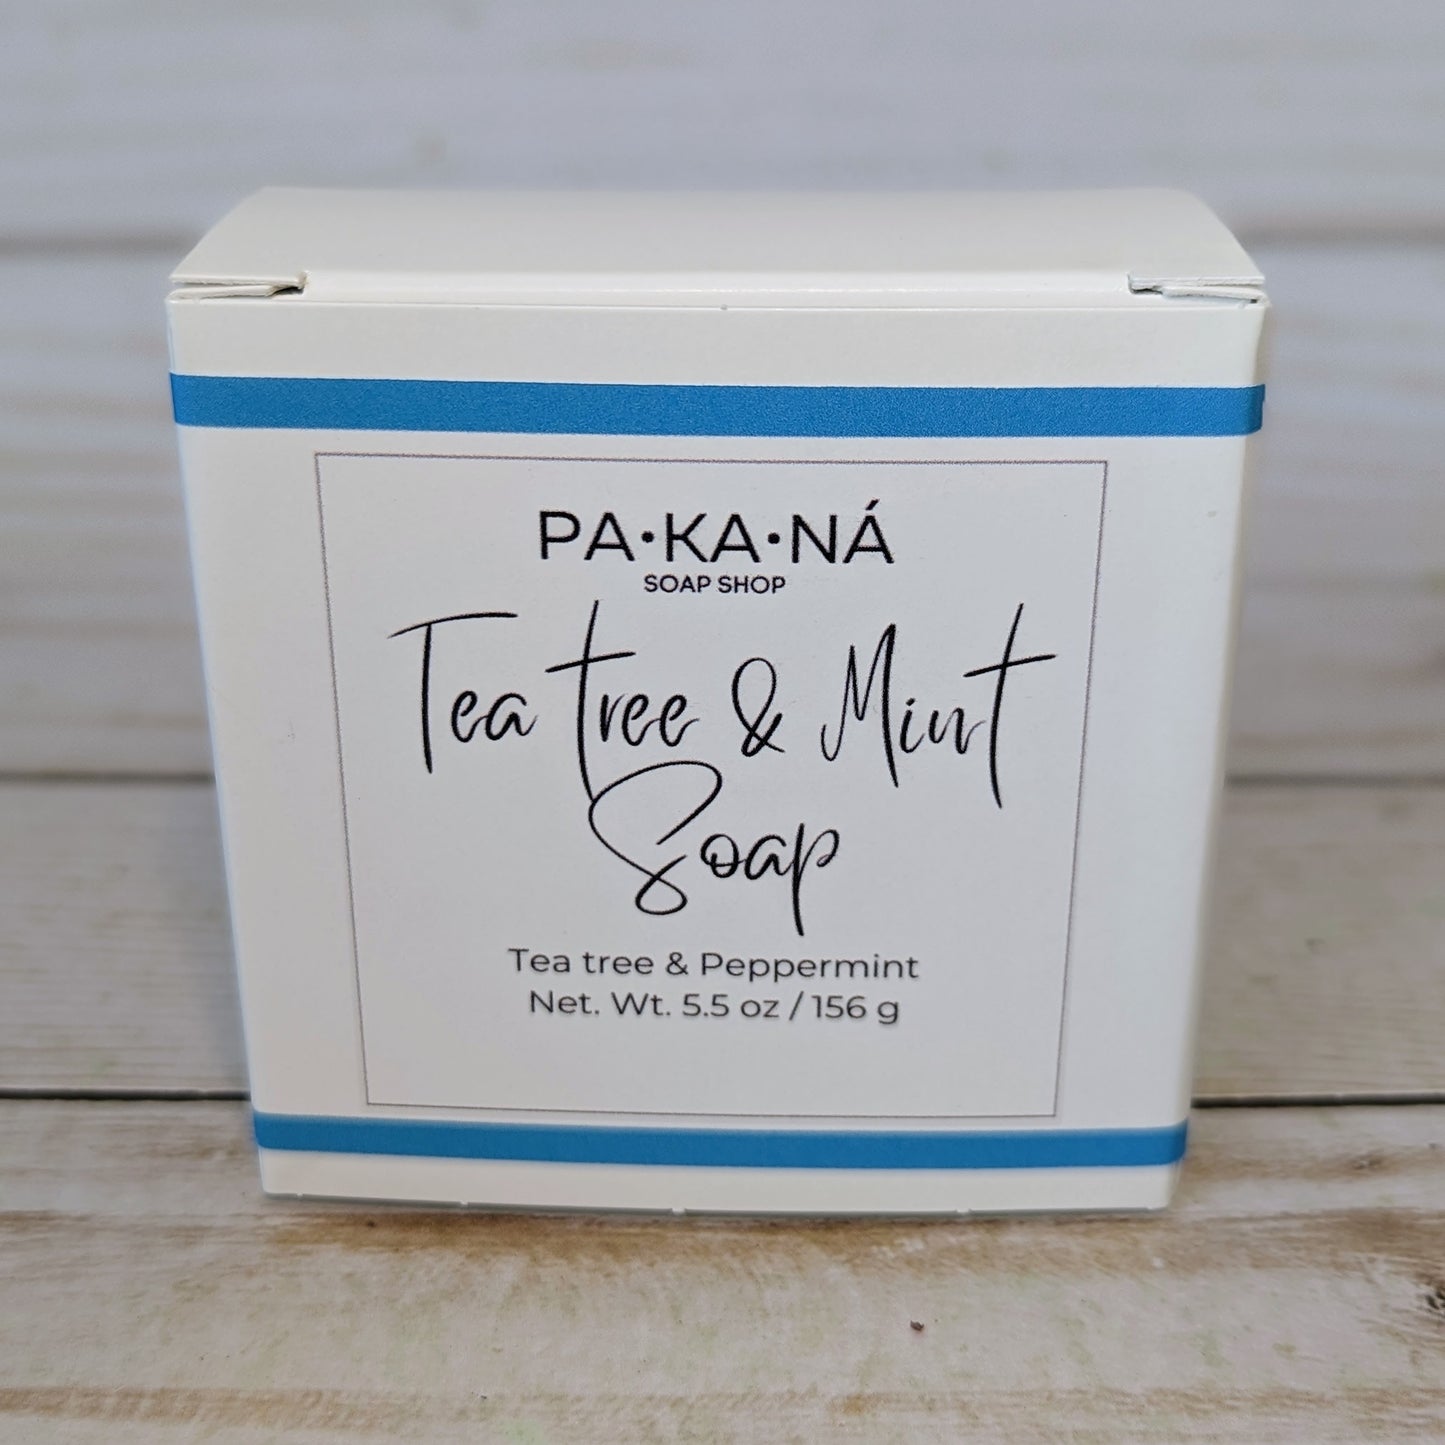 Tea tree & Mint Soap